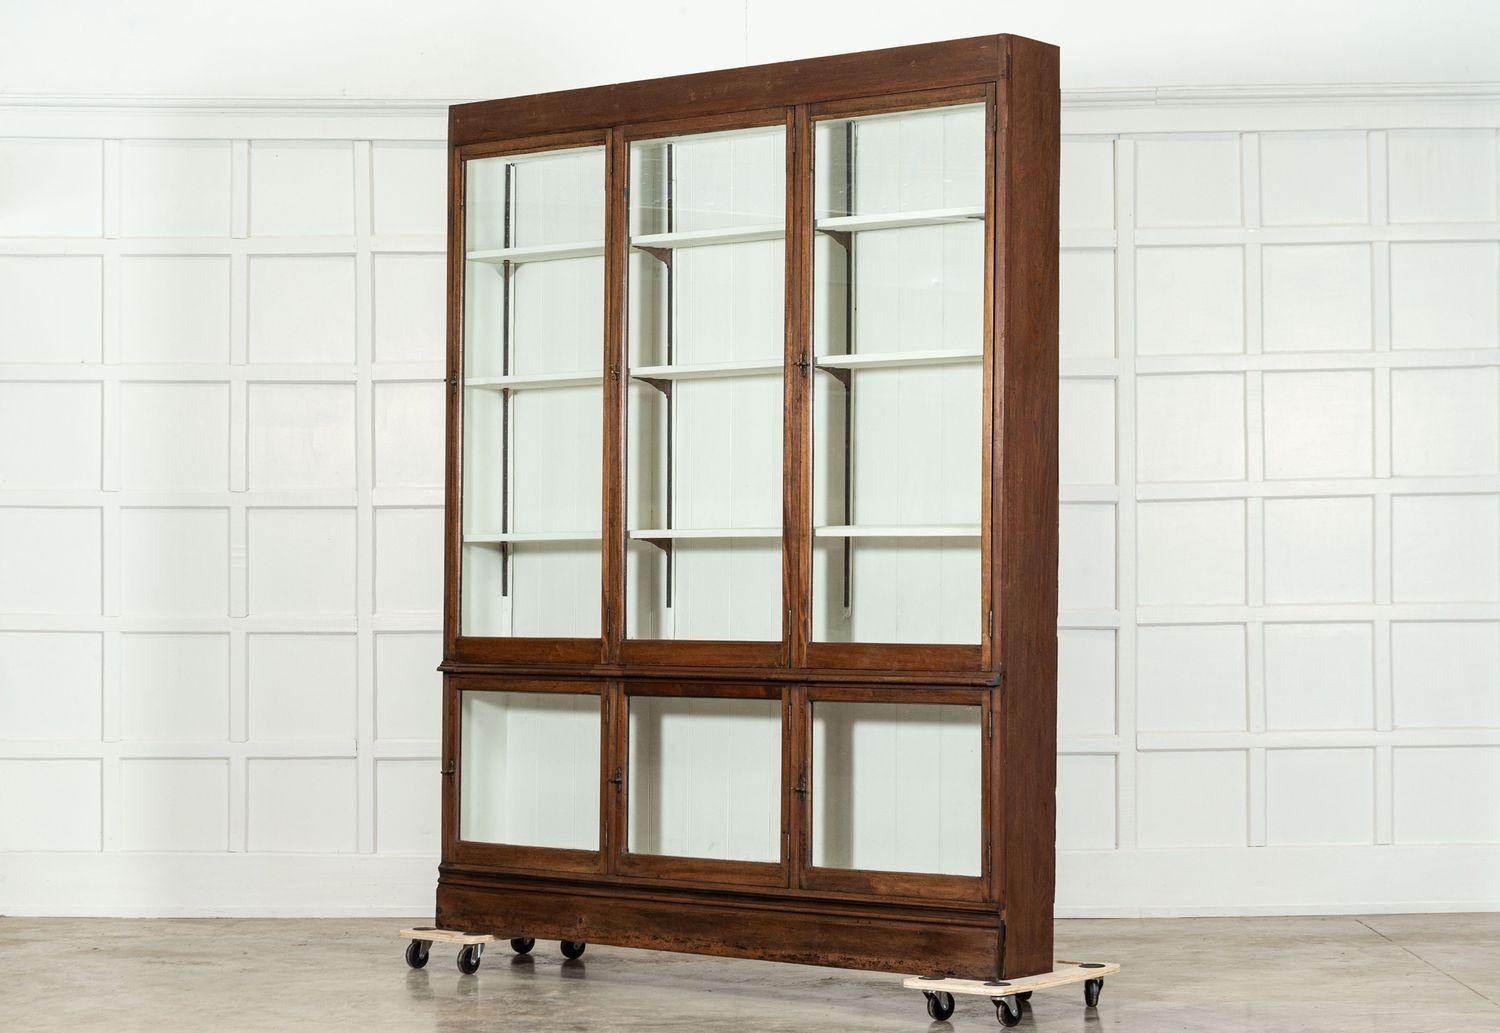 vers 1890
Grand meuble bibliothèque en chêne et acajou glacé anglais du 19e siècle
sku 1789
W189 x D28 x H231 cm
Poids 88 kg